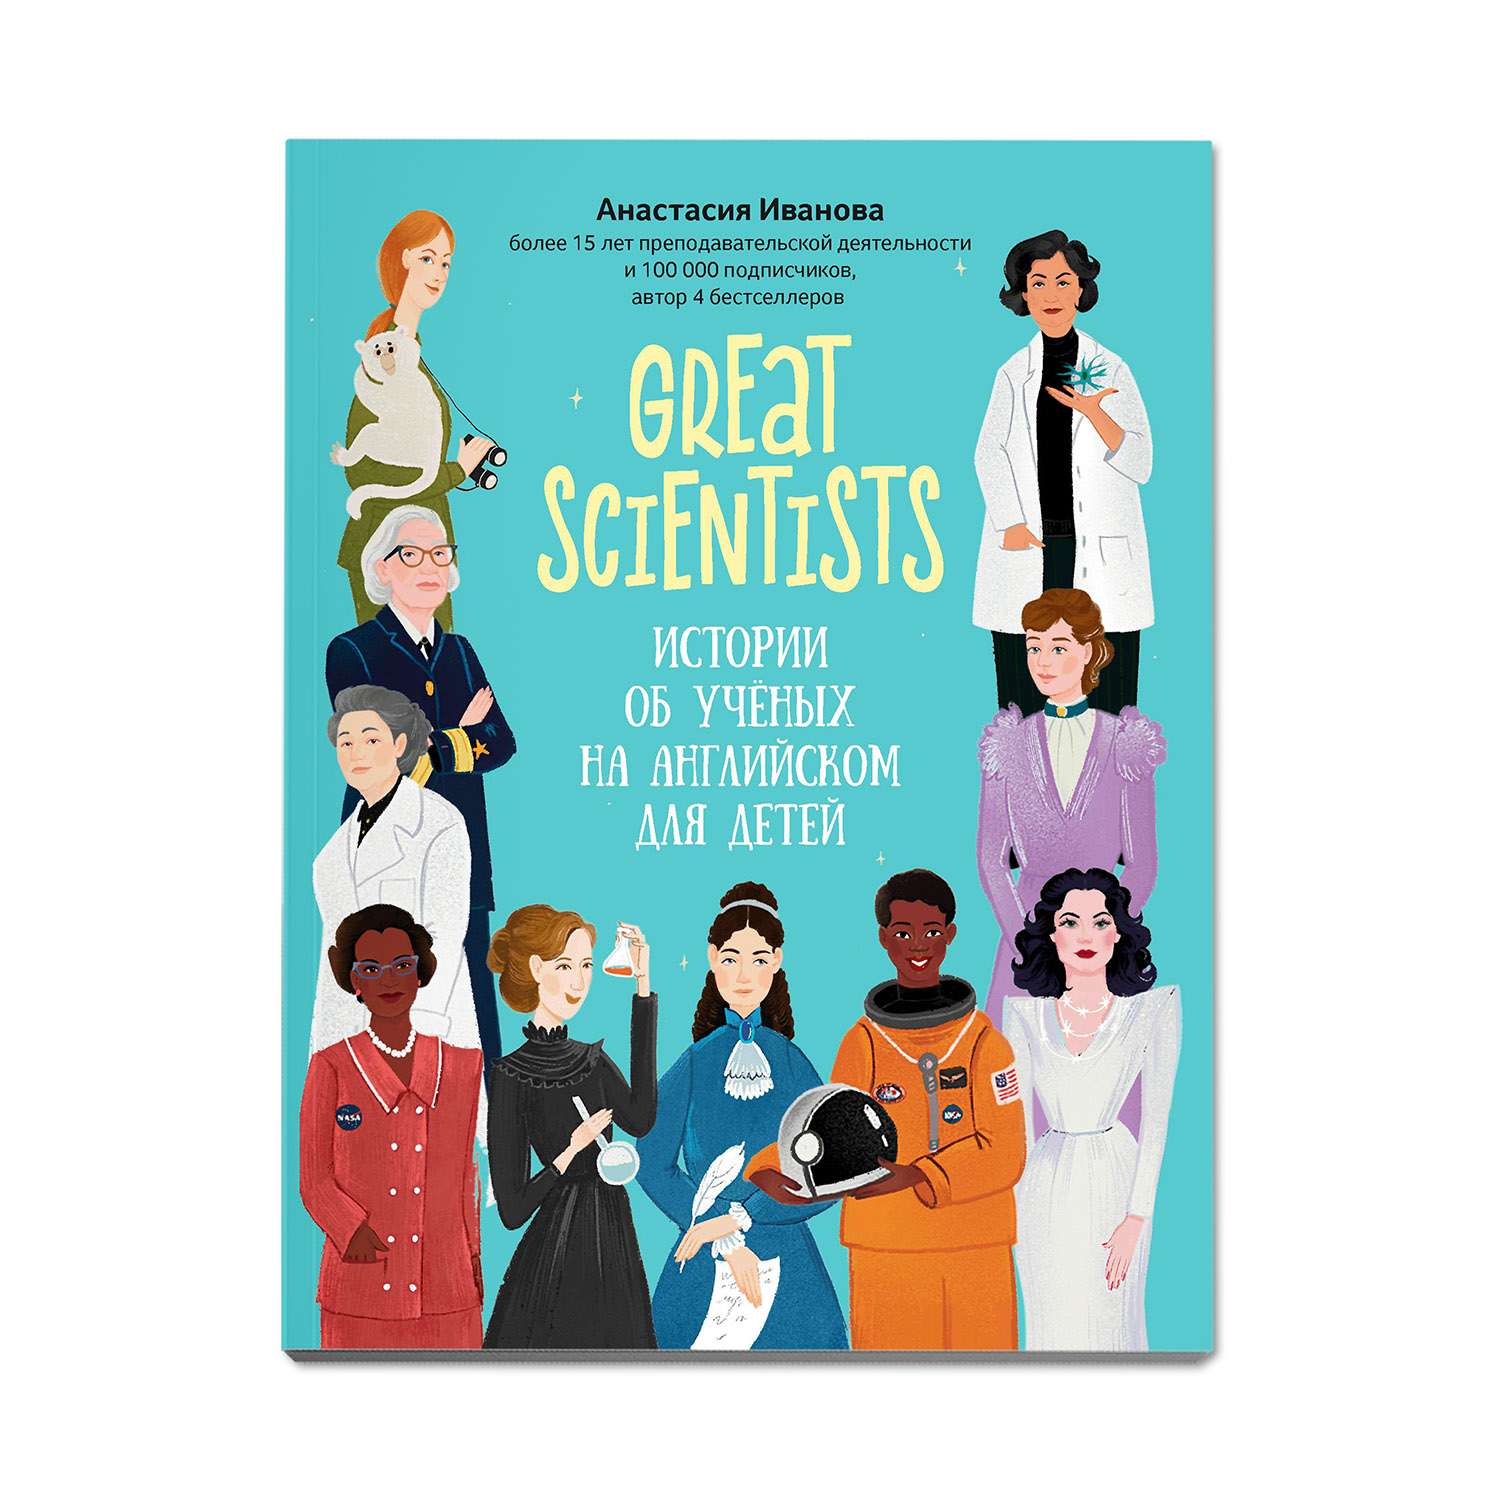 Книга Феникс Great scientists: истории об ученых на английском для детей - фото 1